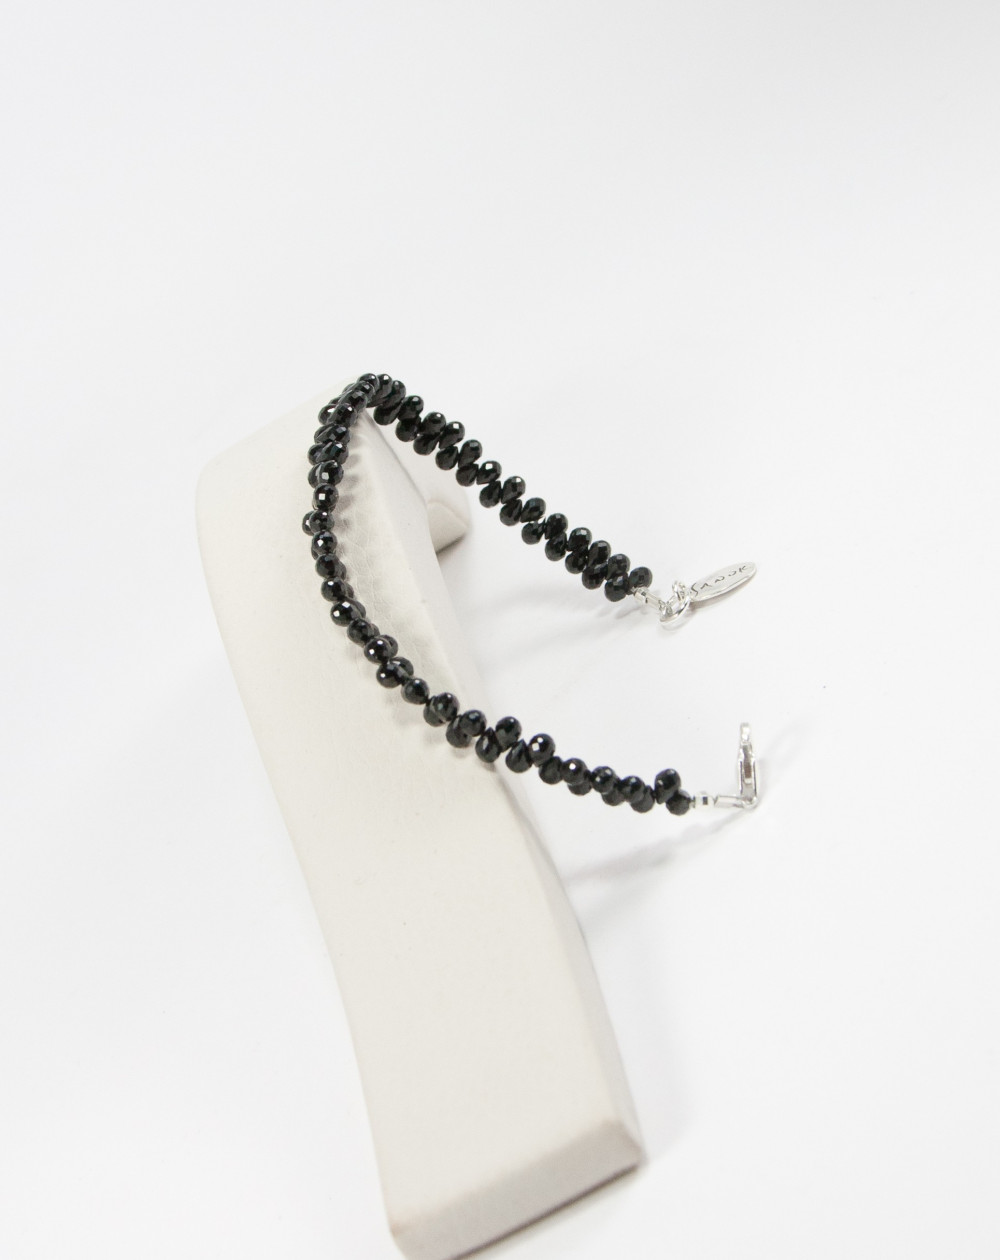 Bracelet Briolettes de Spinelle noir, Sanuk création, Bayonne